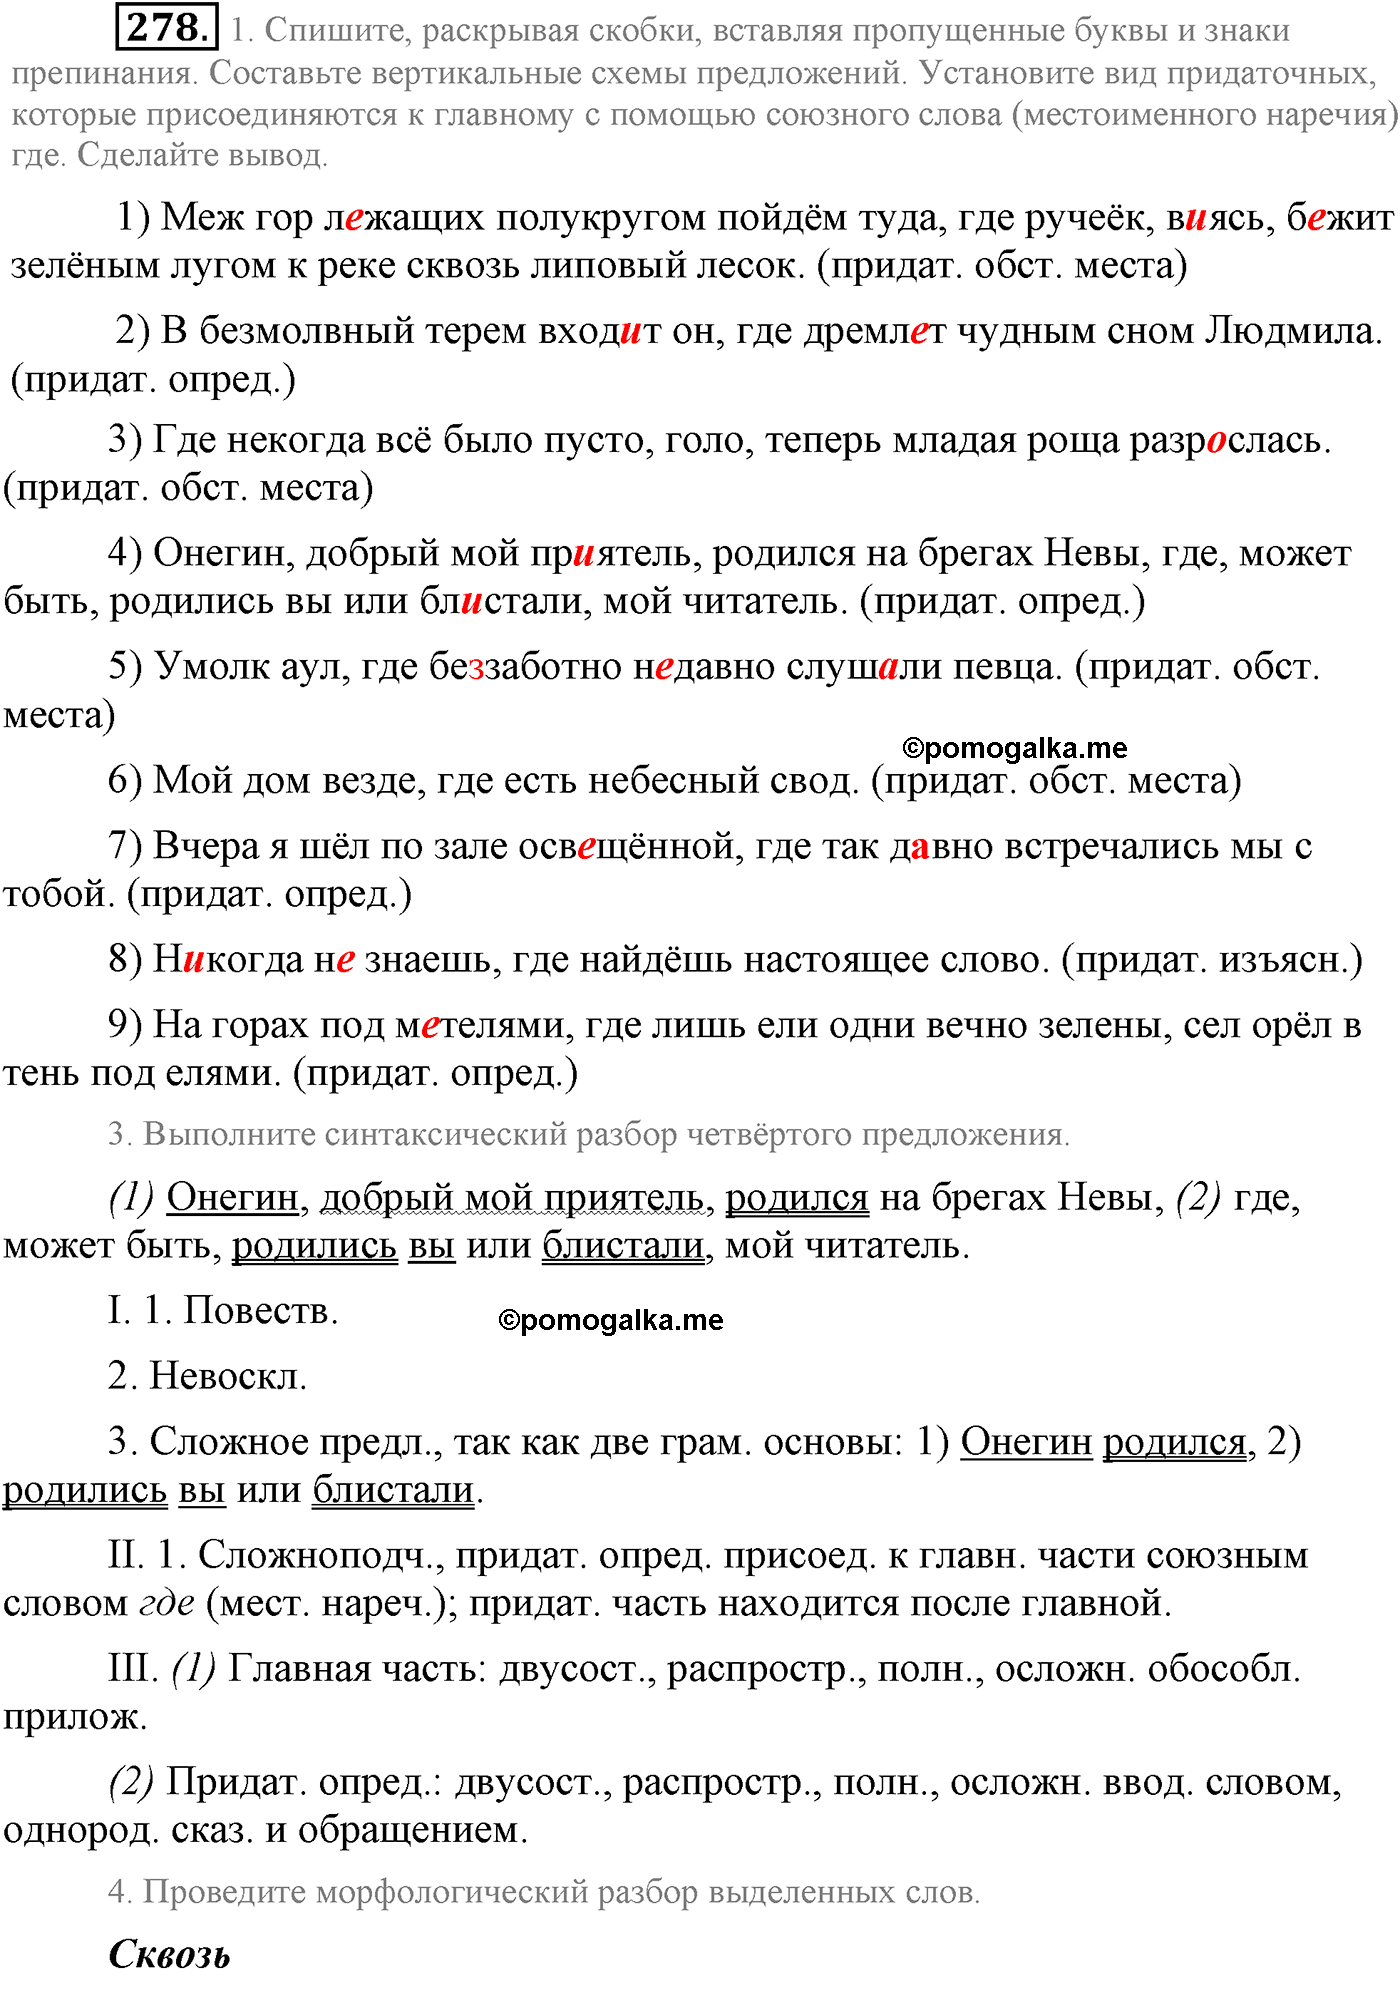 упражнение №278 русский язык 9 класс Львова